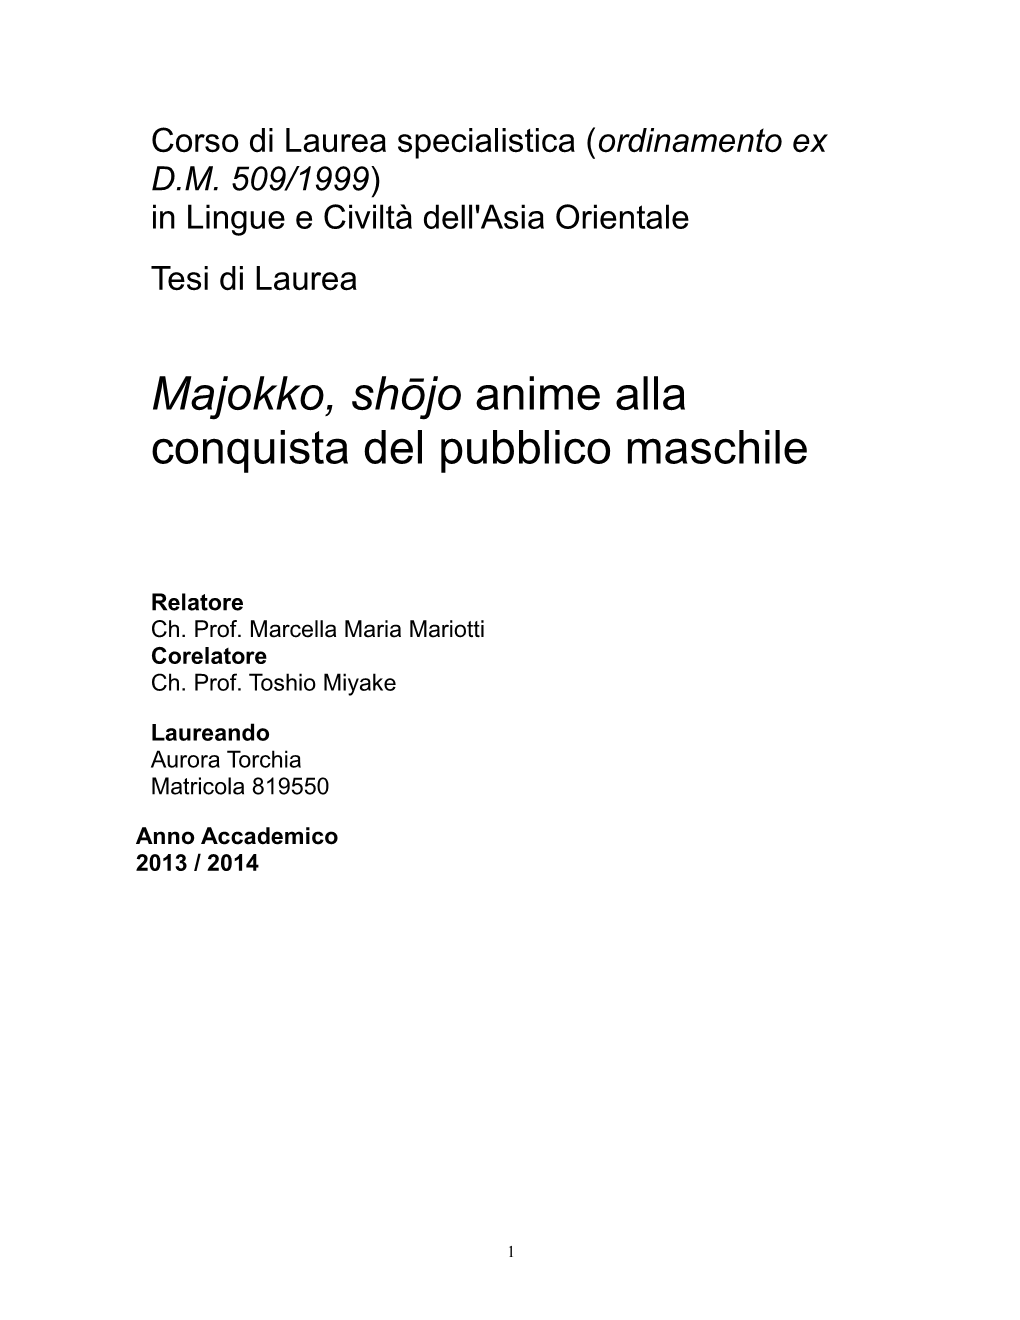 Majokko, Shōjo Anime Alla Conquista Del Pubblico Maschile